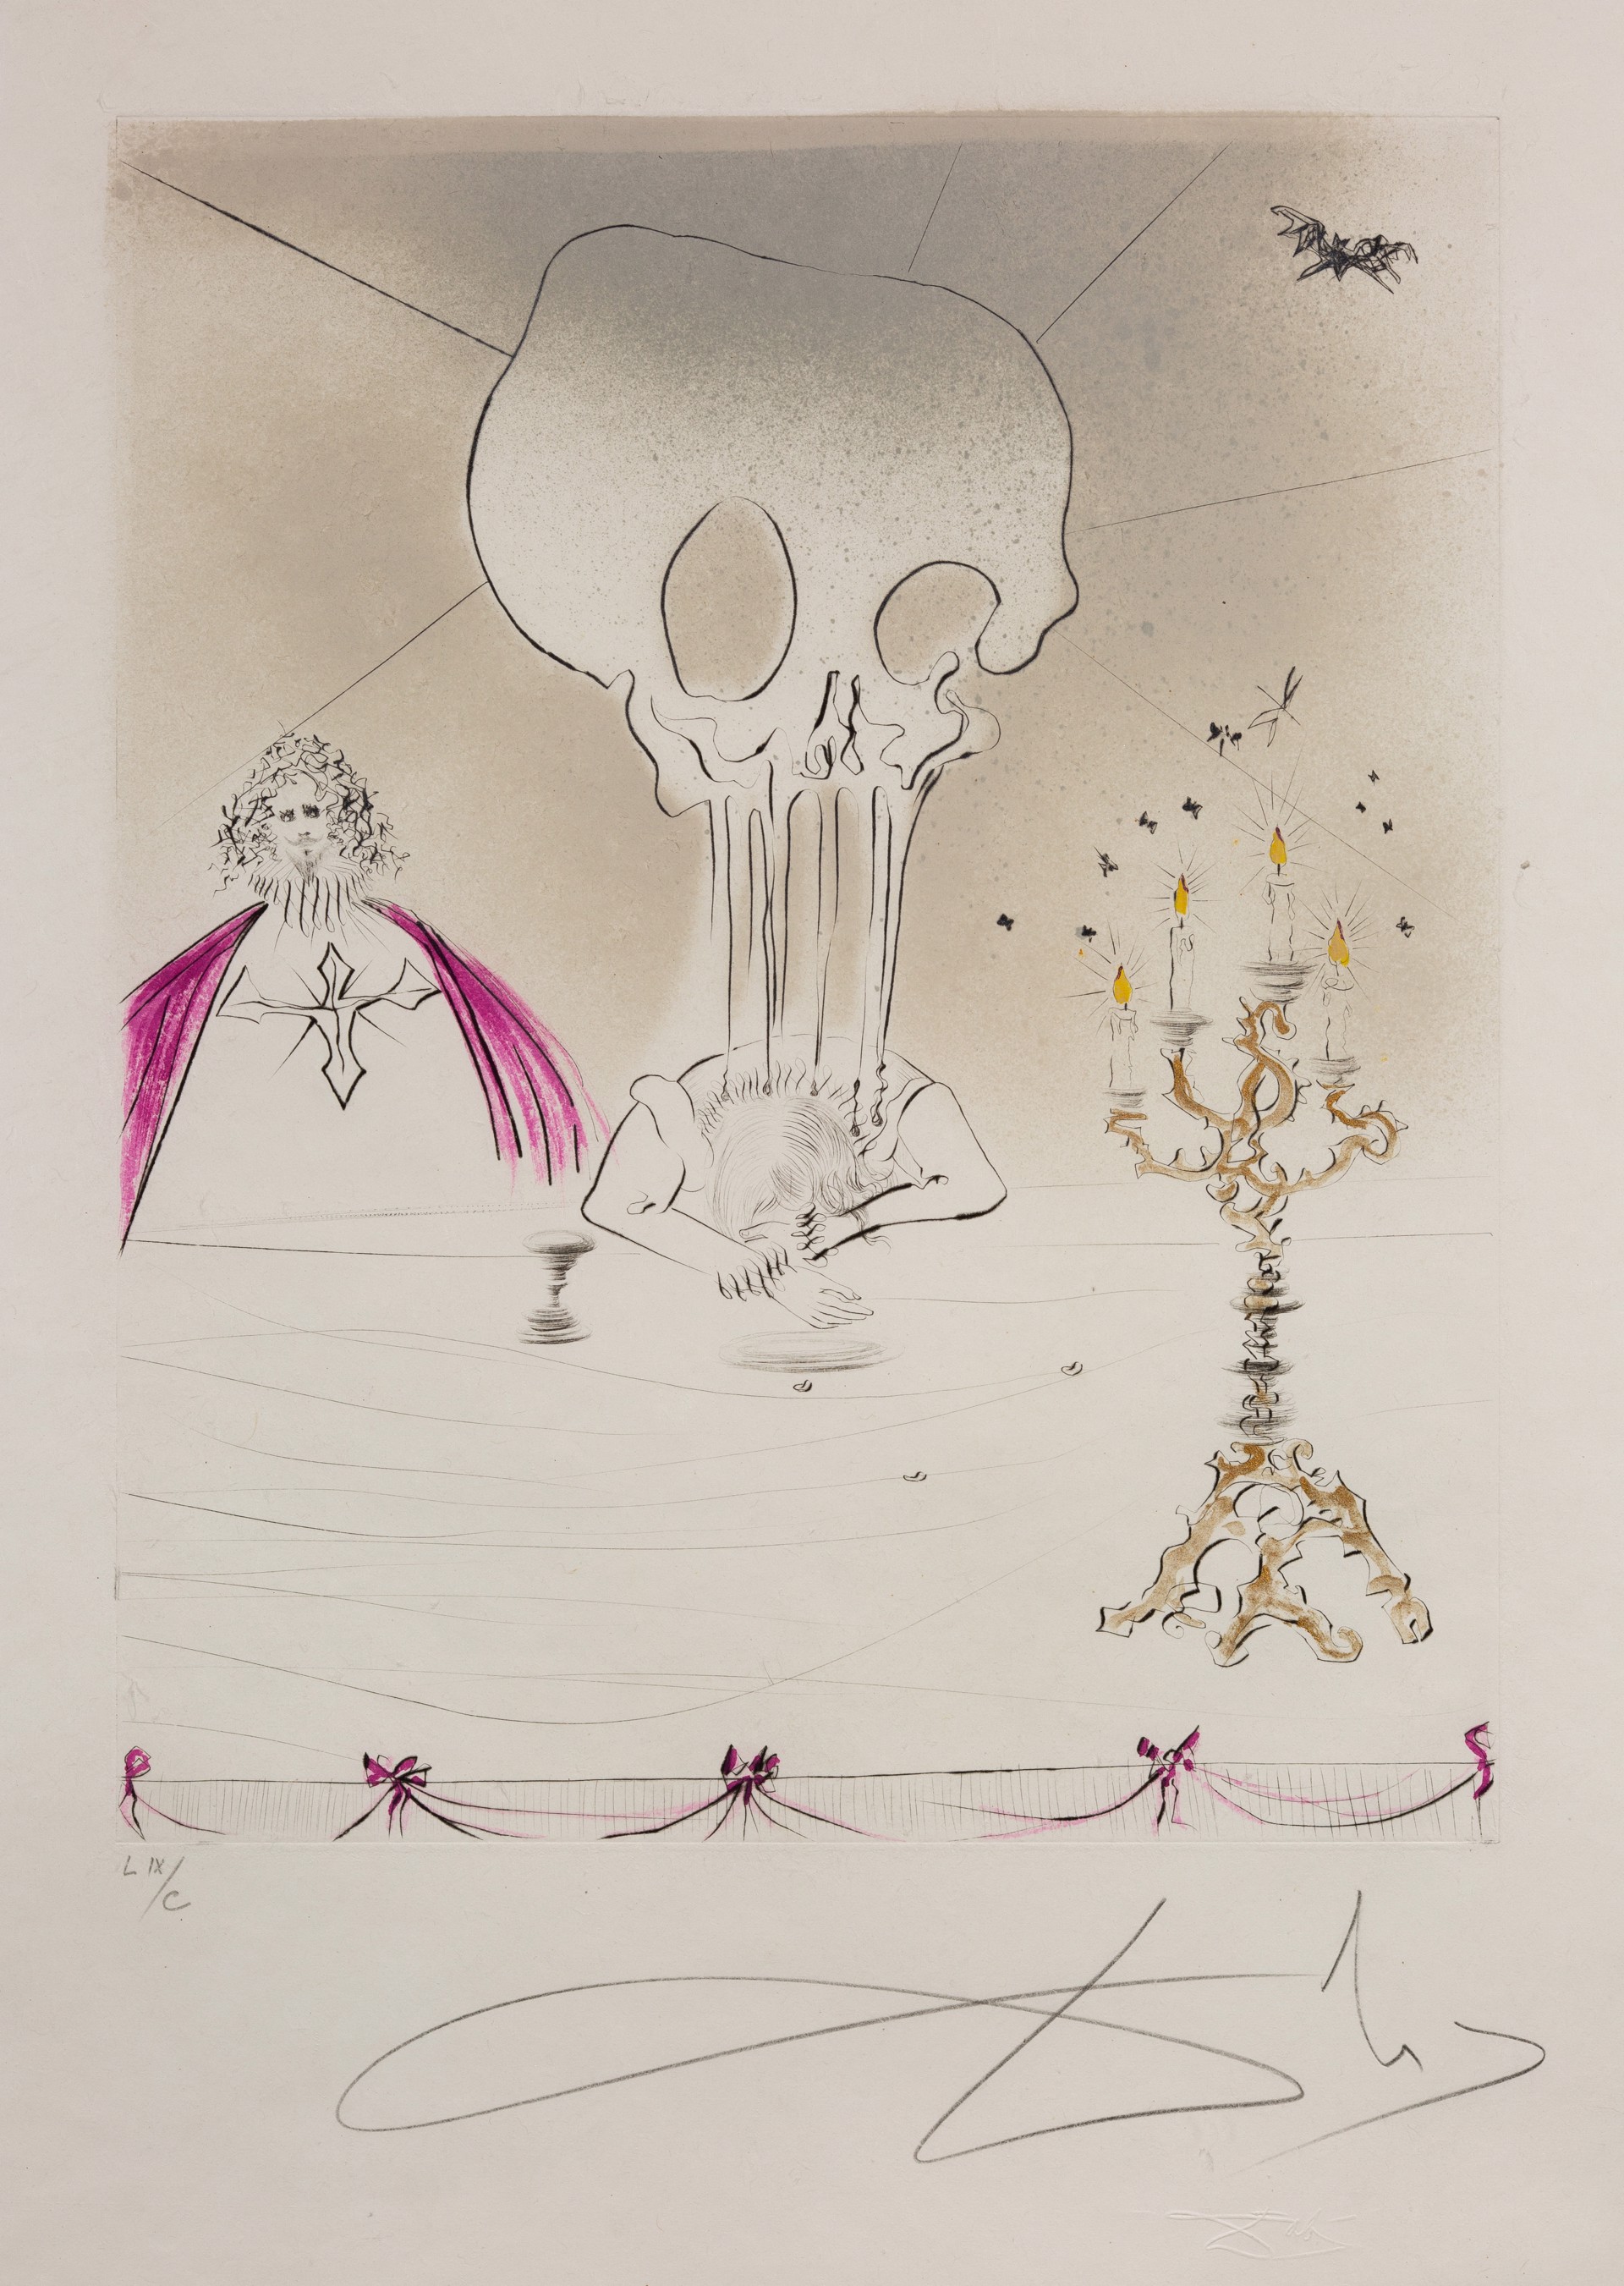 Don Juan “Le Banquet  LIX/C” by Salvador Dalí